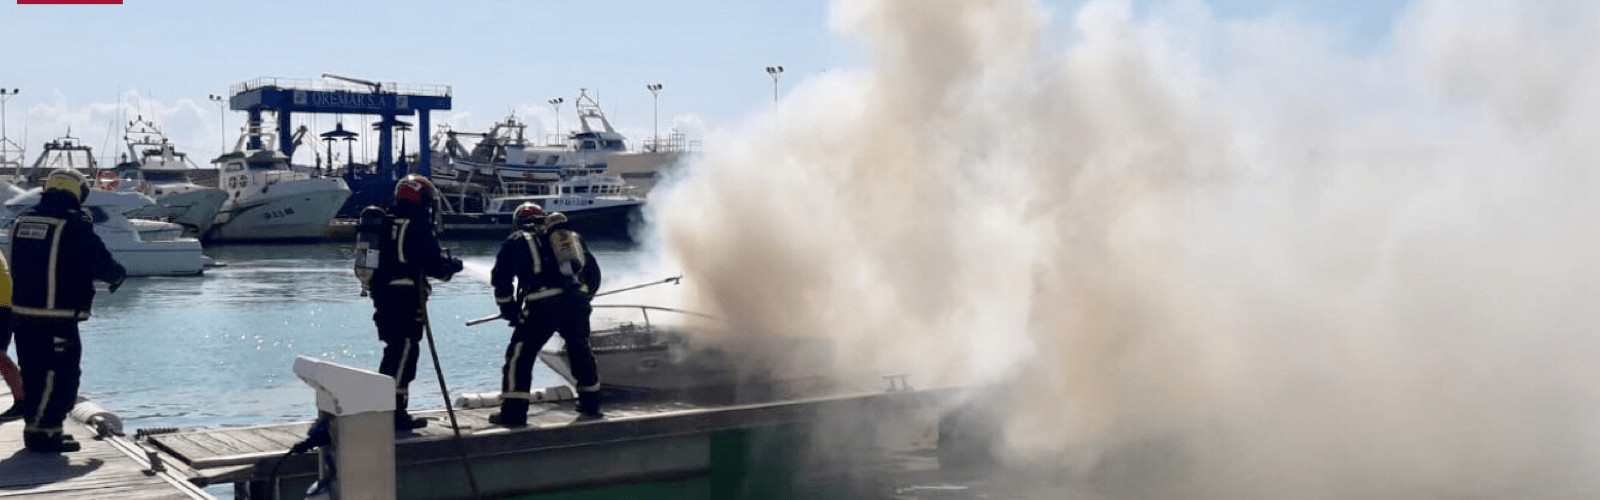 Seis heridos al incendiarse una barca en el puerto de Benicarló